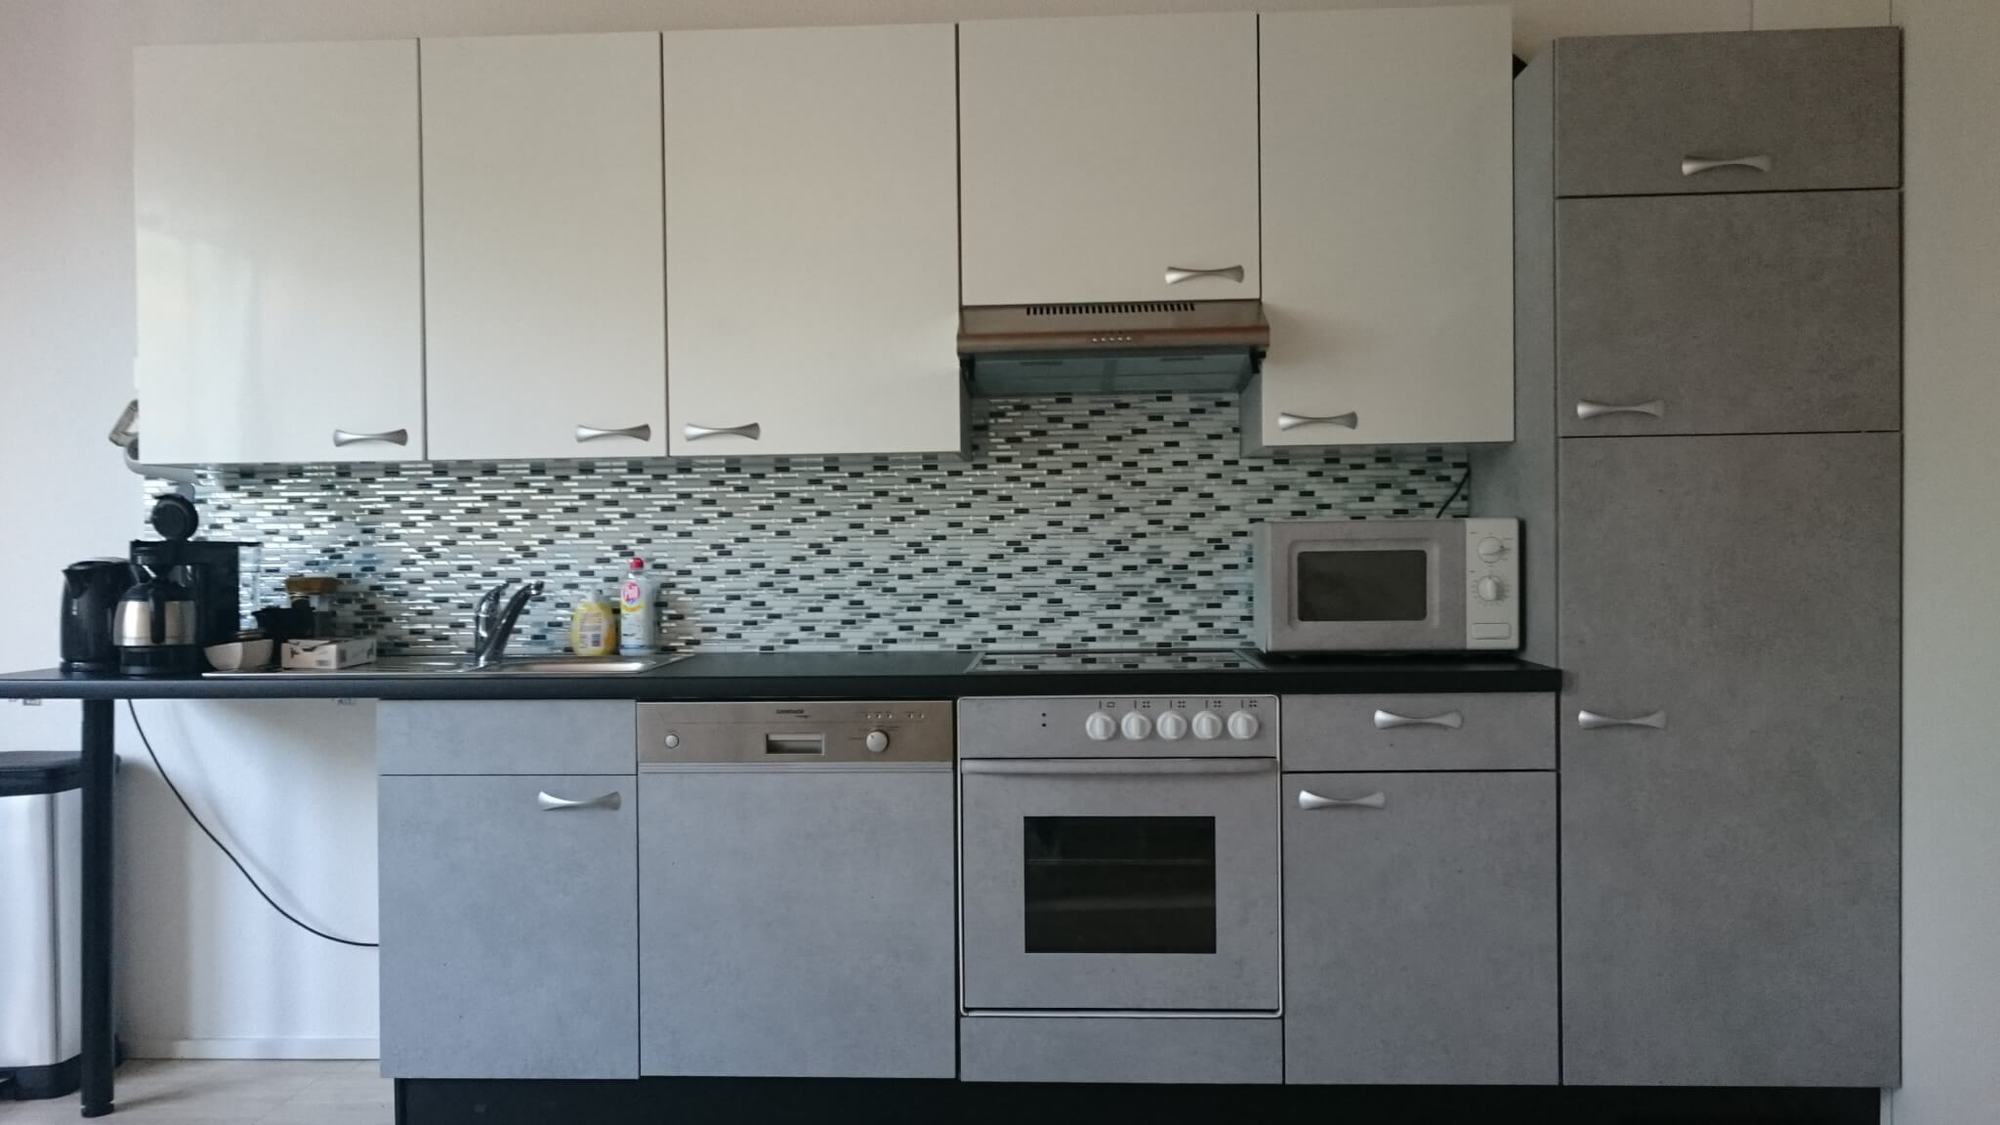 Consejos para el diseño de interiores de la cocina con color y elementos destacados en aspecto moderno en hormigón, blanco brillante y negro - después